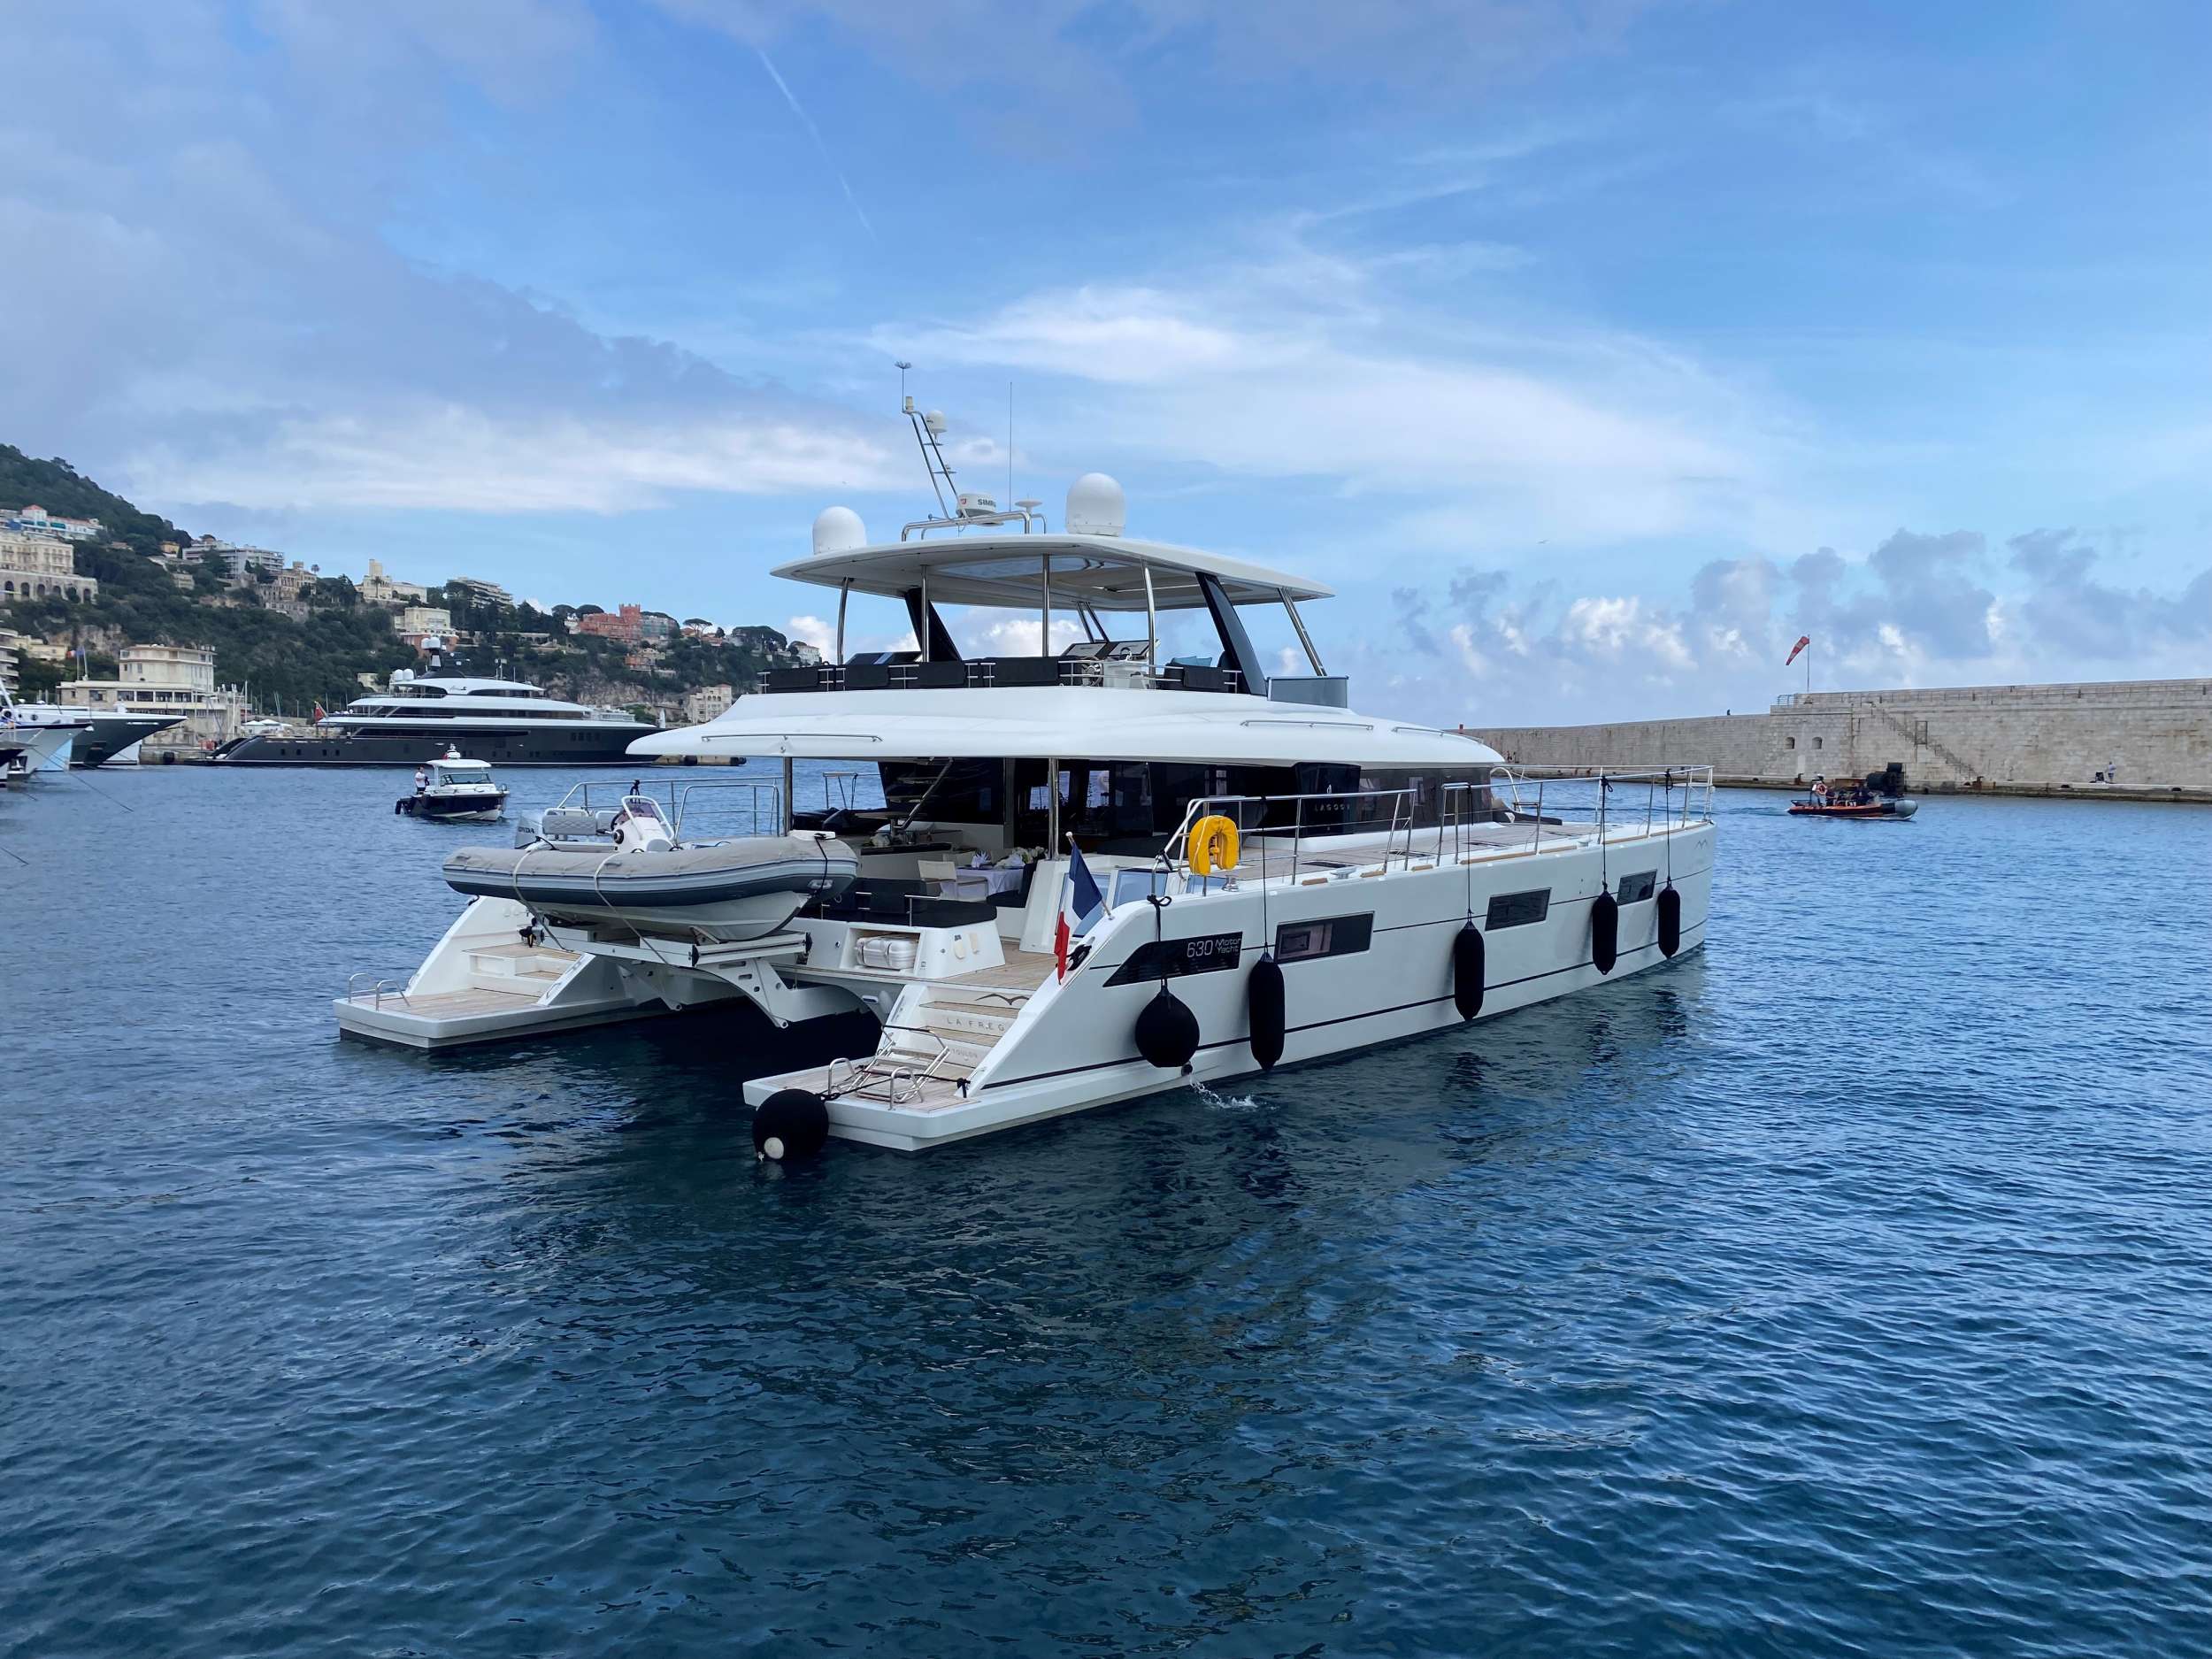 LA FREGATE - Yacht Charter Monaco & Boat hire in Fr. Riviera, Corsica & Sardinia 1